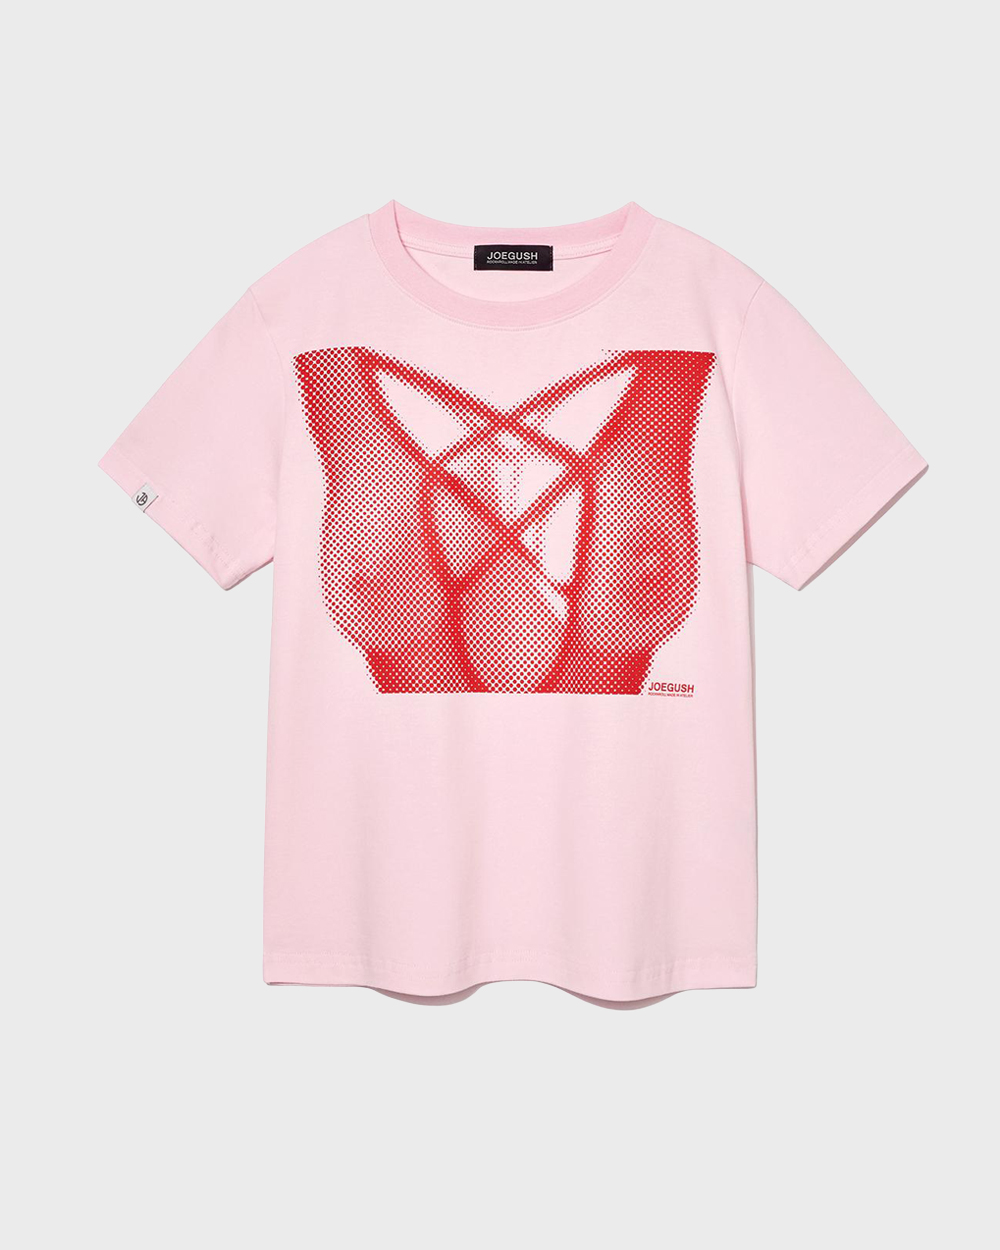 조거쉬 X-ray Boobs T-shirt (CROP VER.) (Baby Pink/Red)